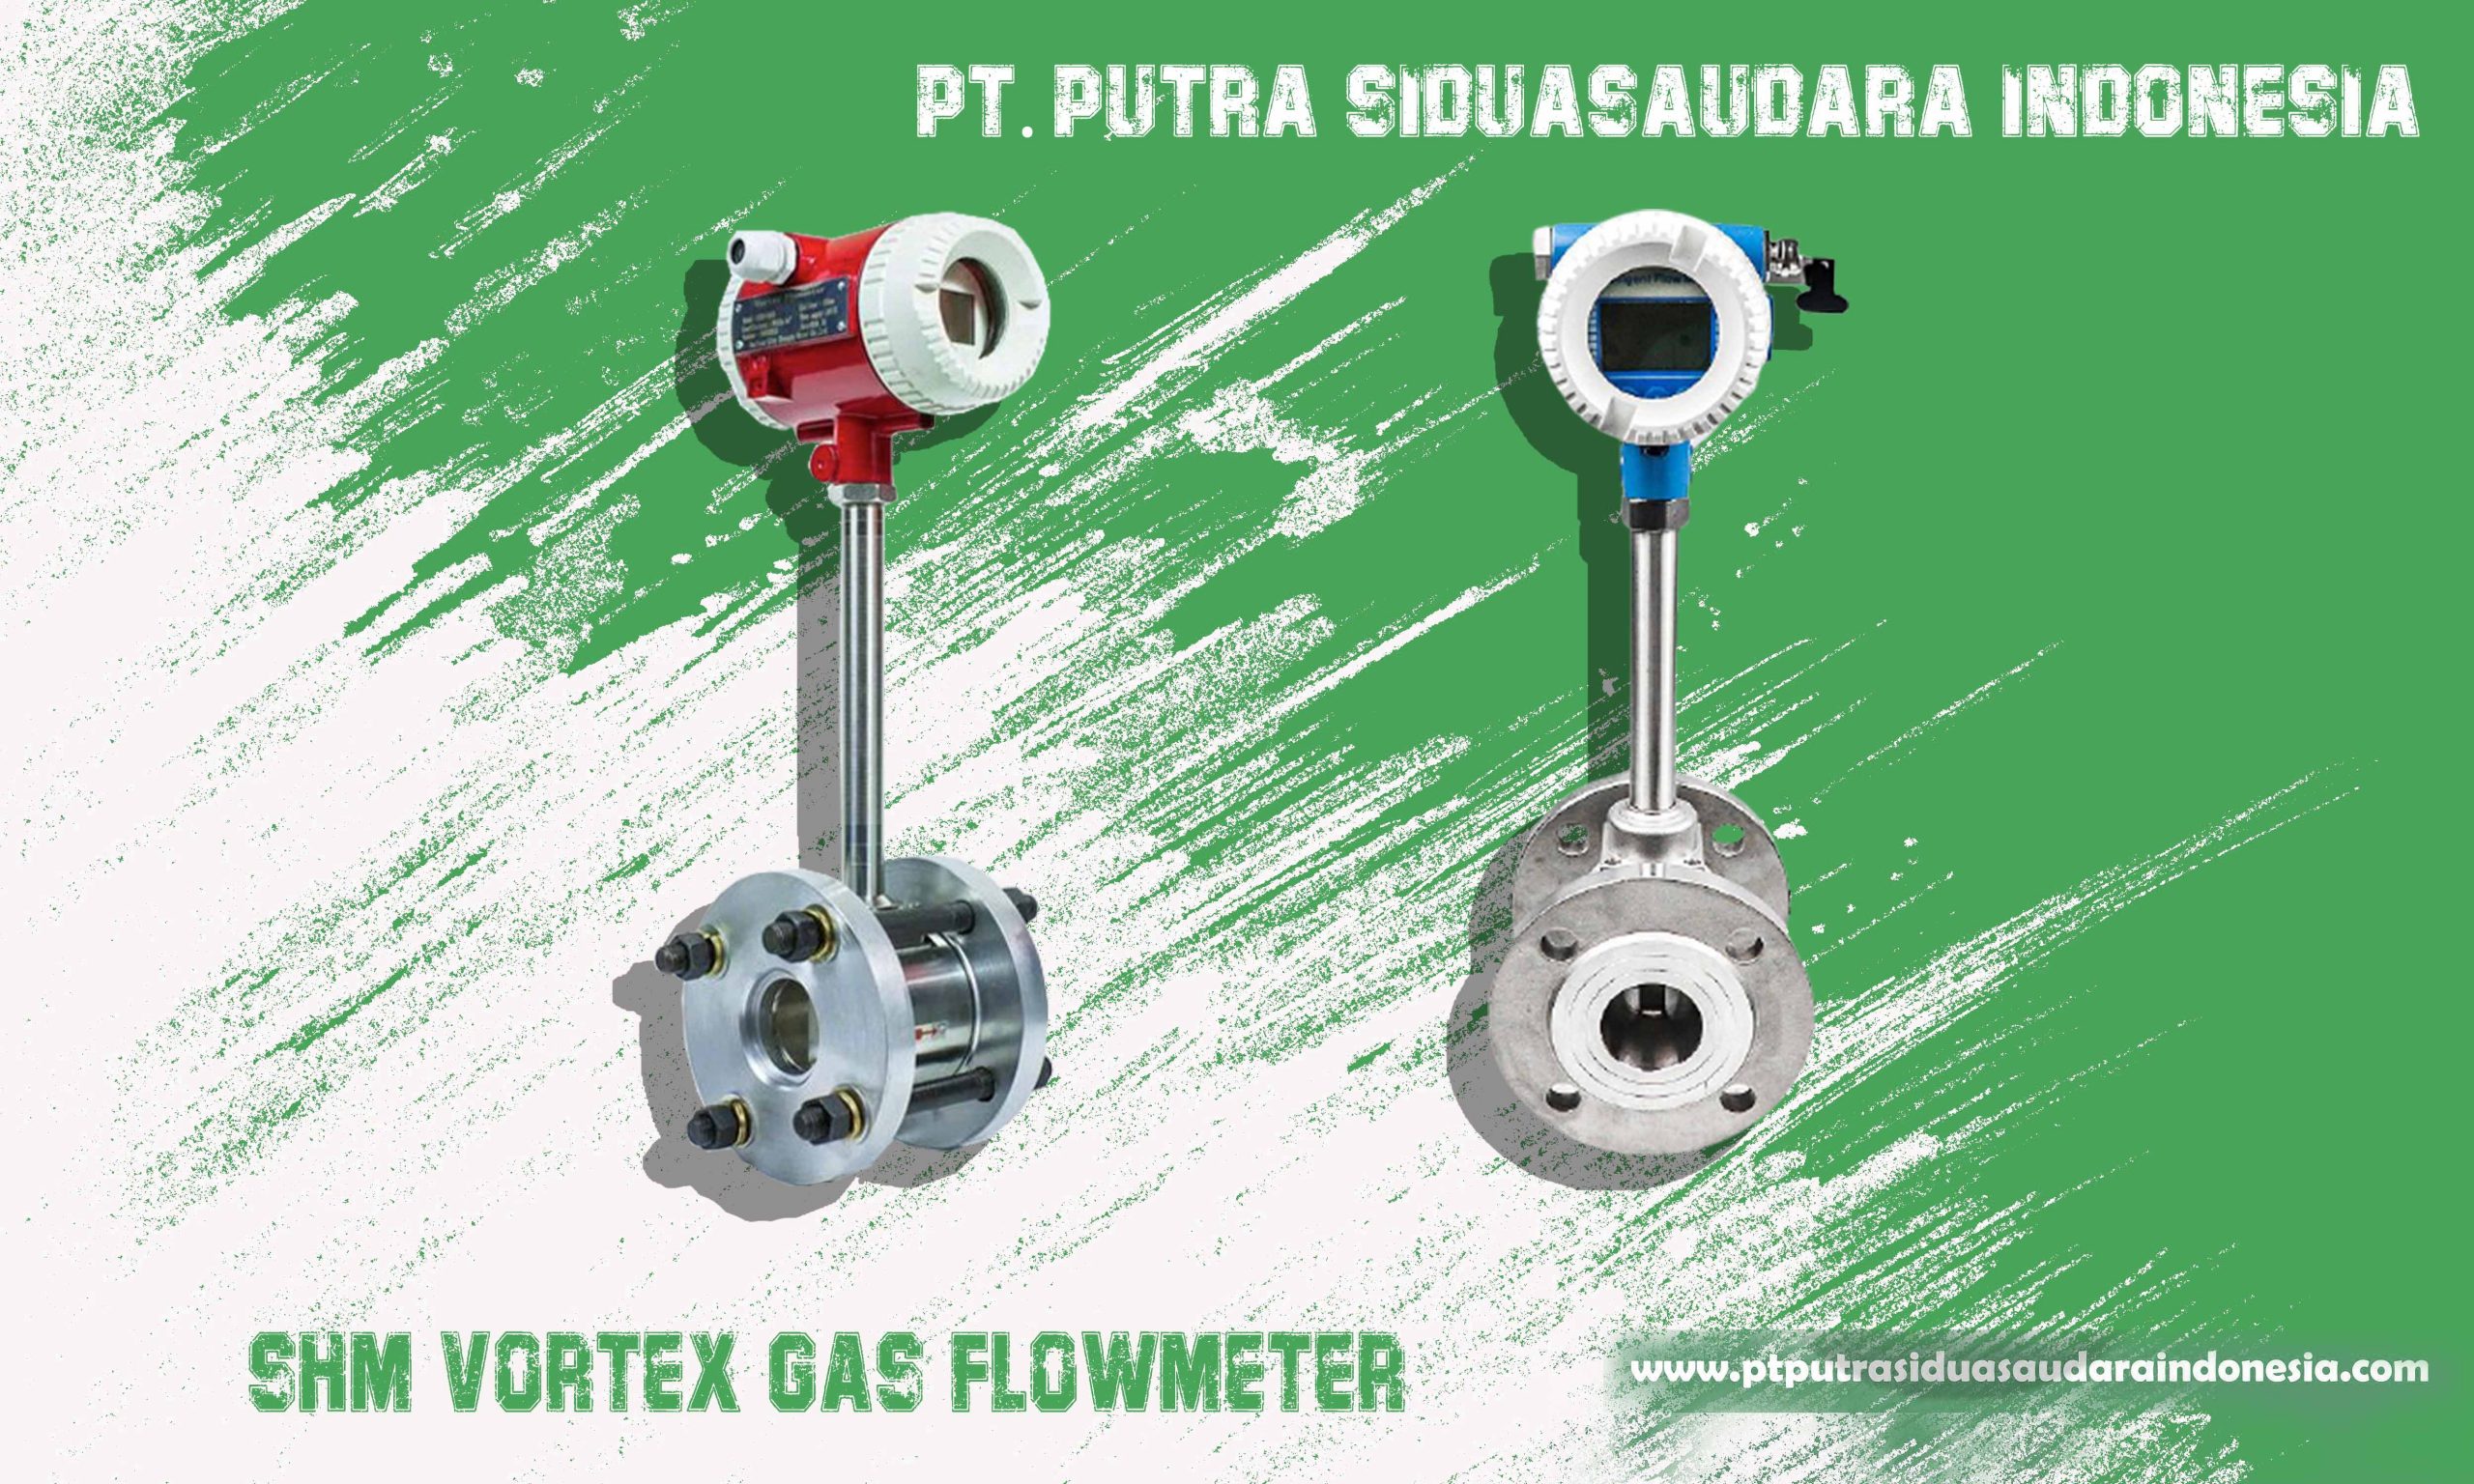 Flowmeter Gas Vortex SHM